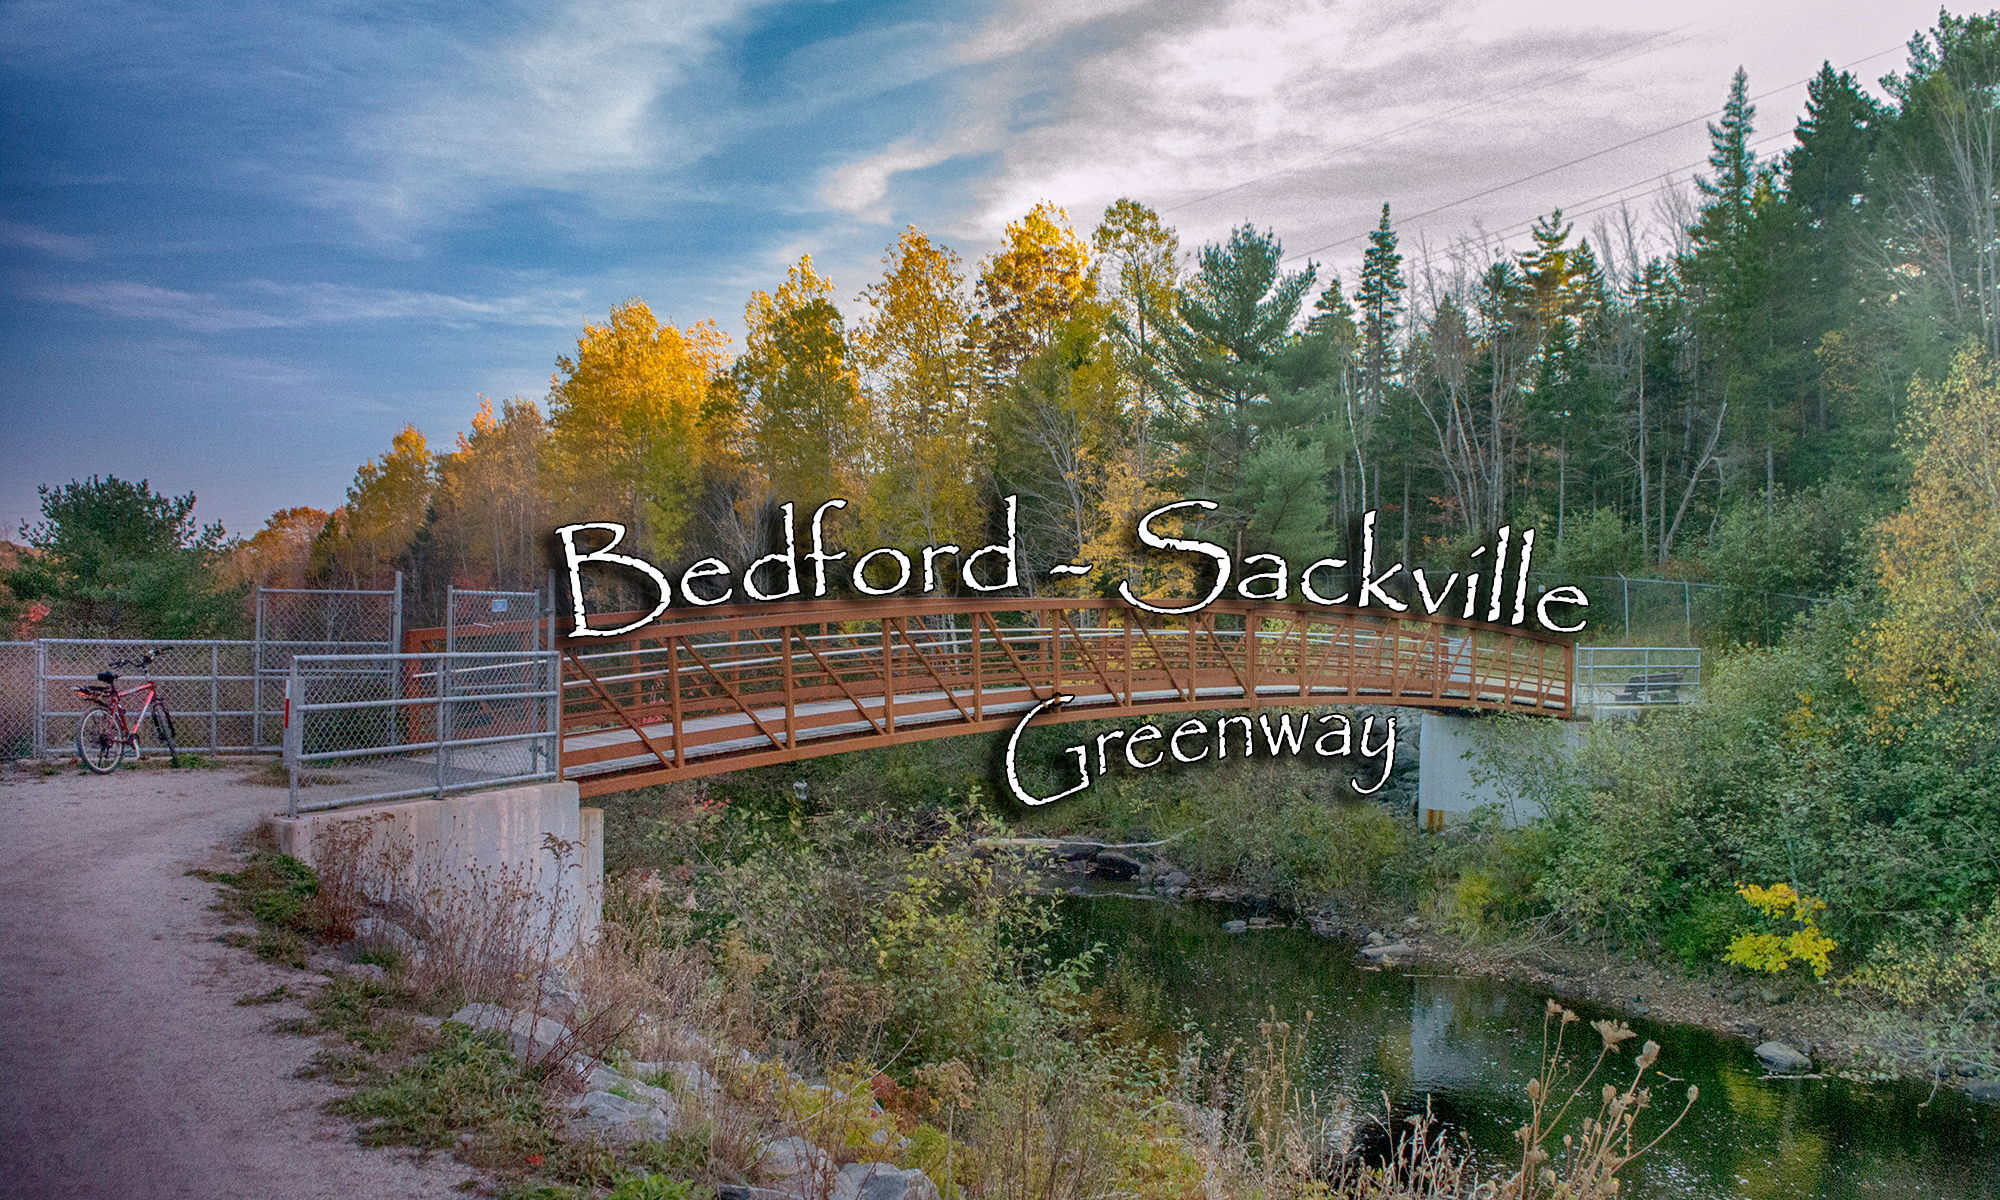 Bedford Sackville Greenway Photos